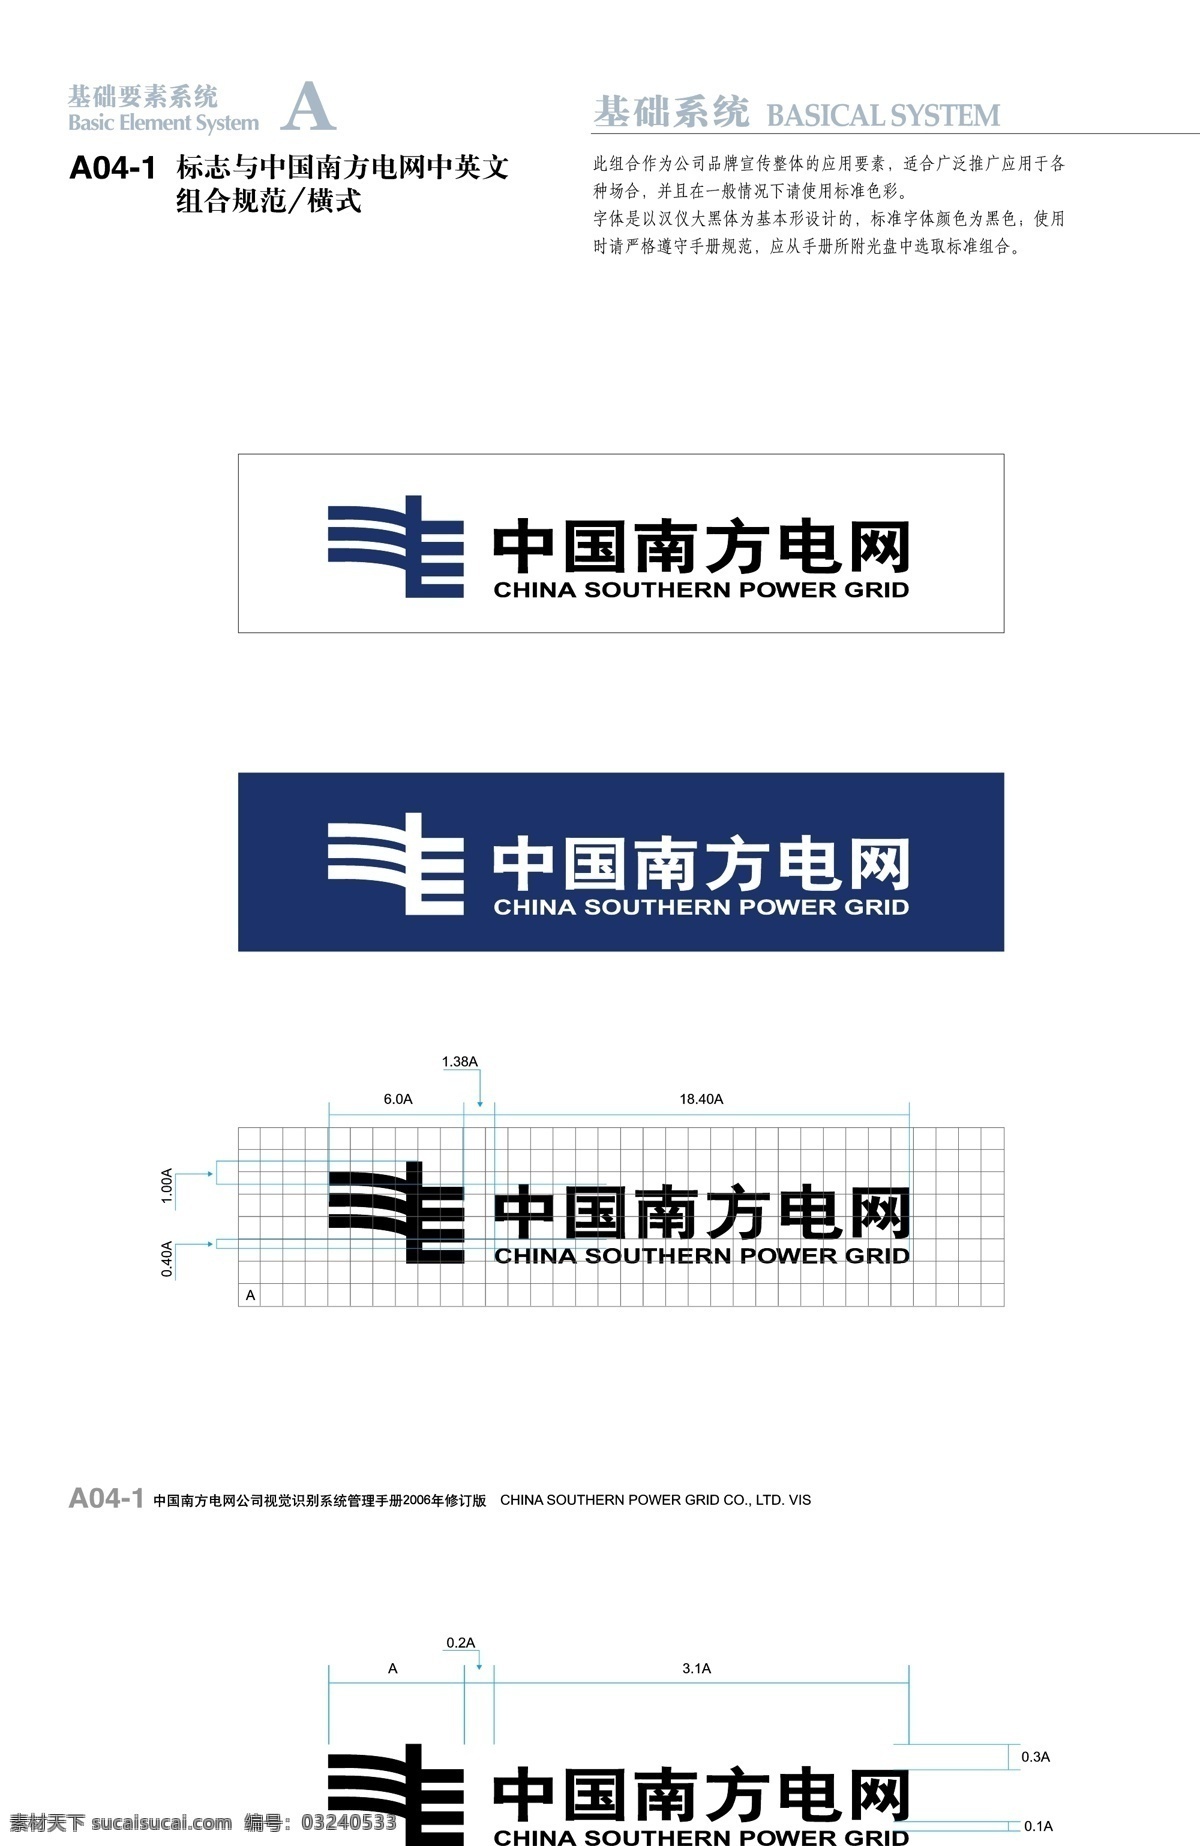 中国 南方 电网 中英文 组合 规范 横 式 组合规范 标识标志图标 企业 logo 标志 中国南方电网 矢量图库